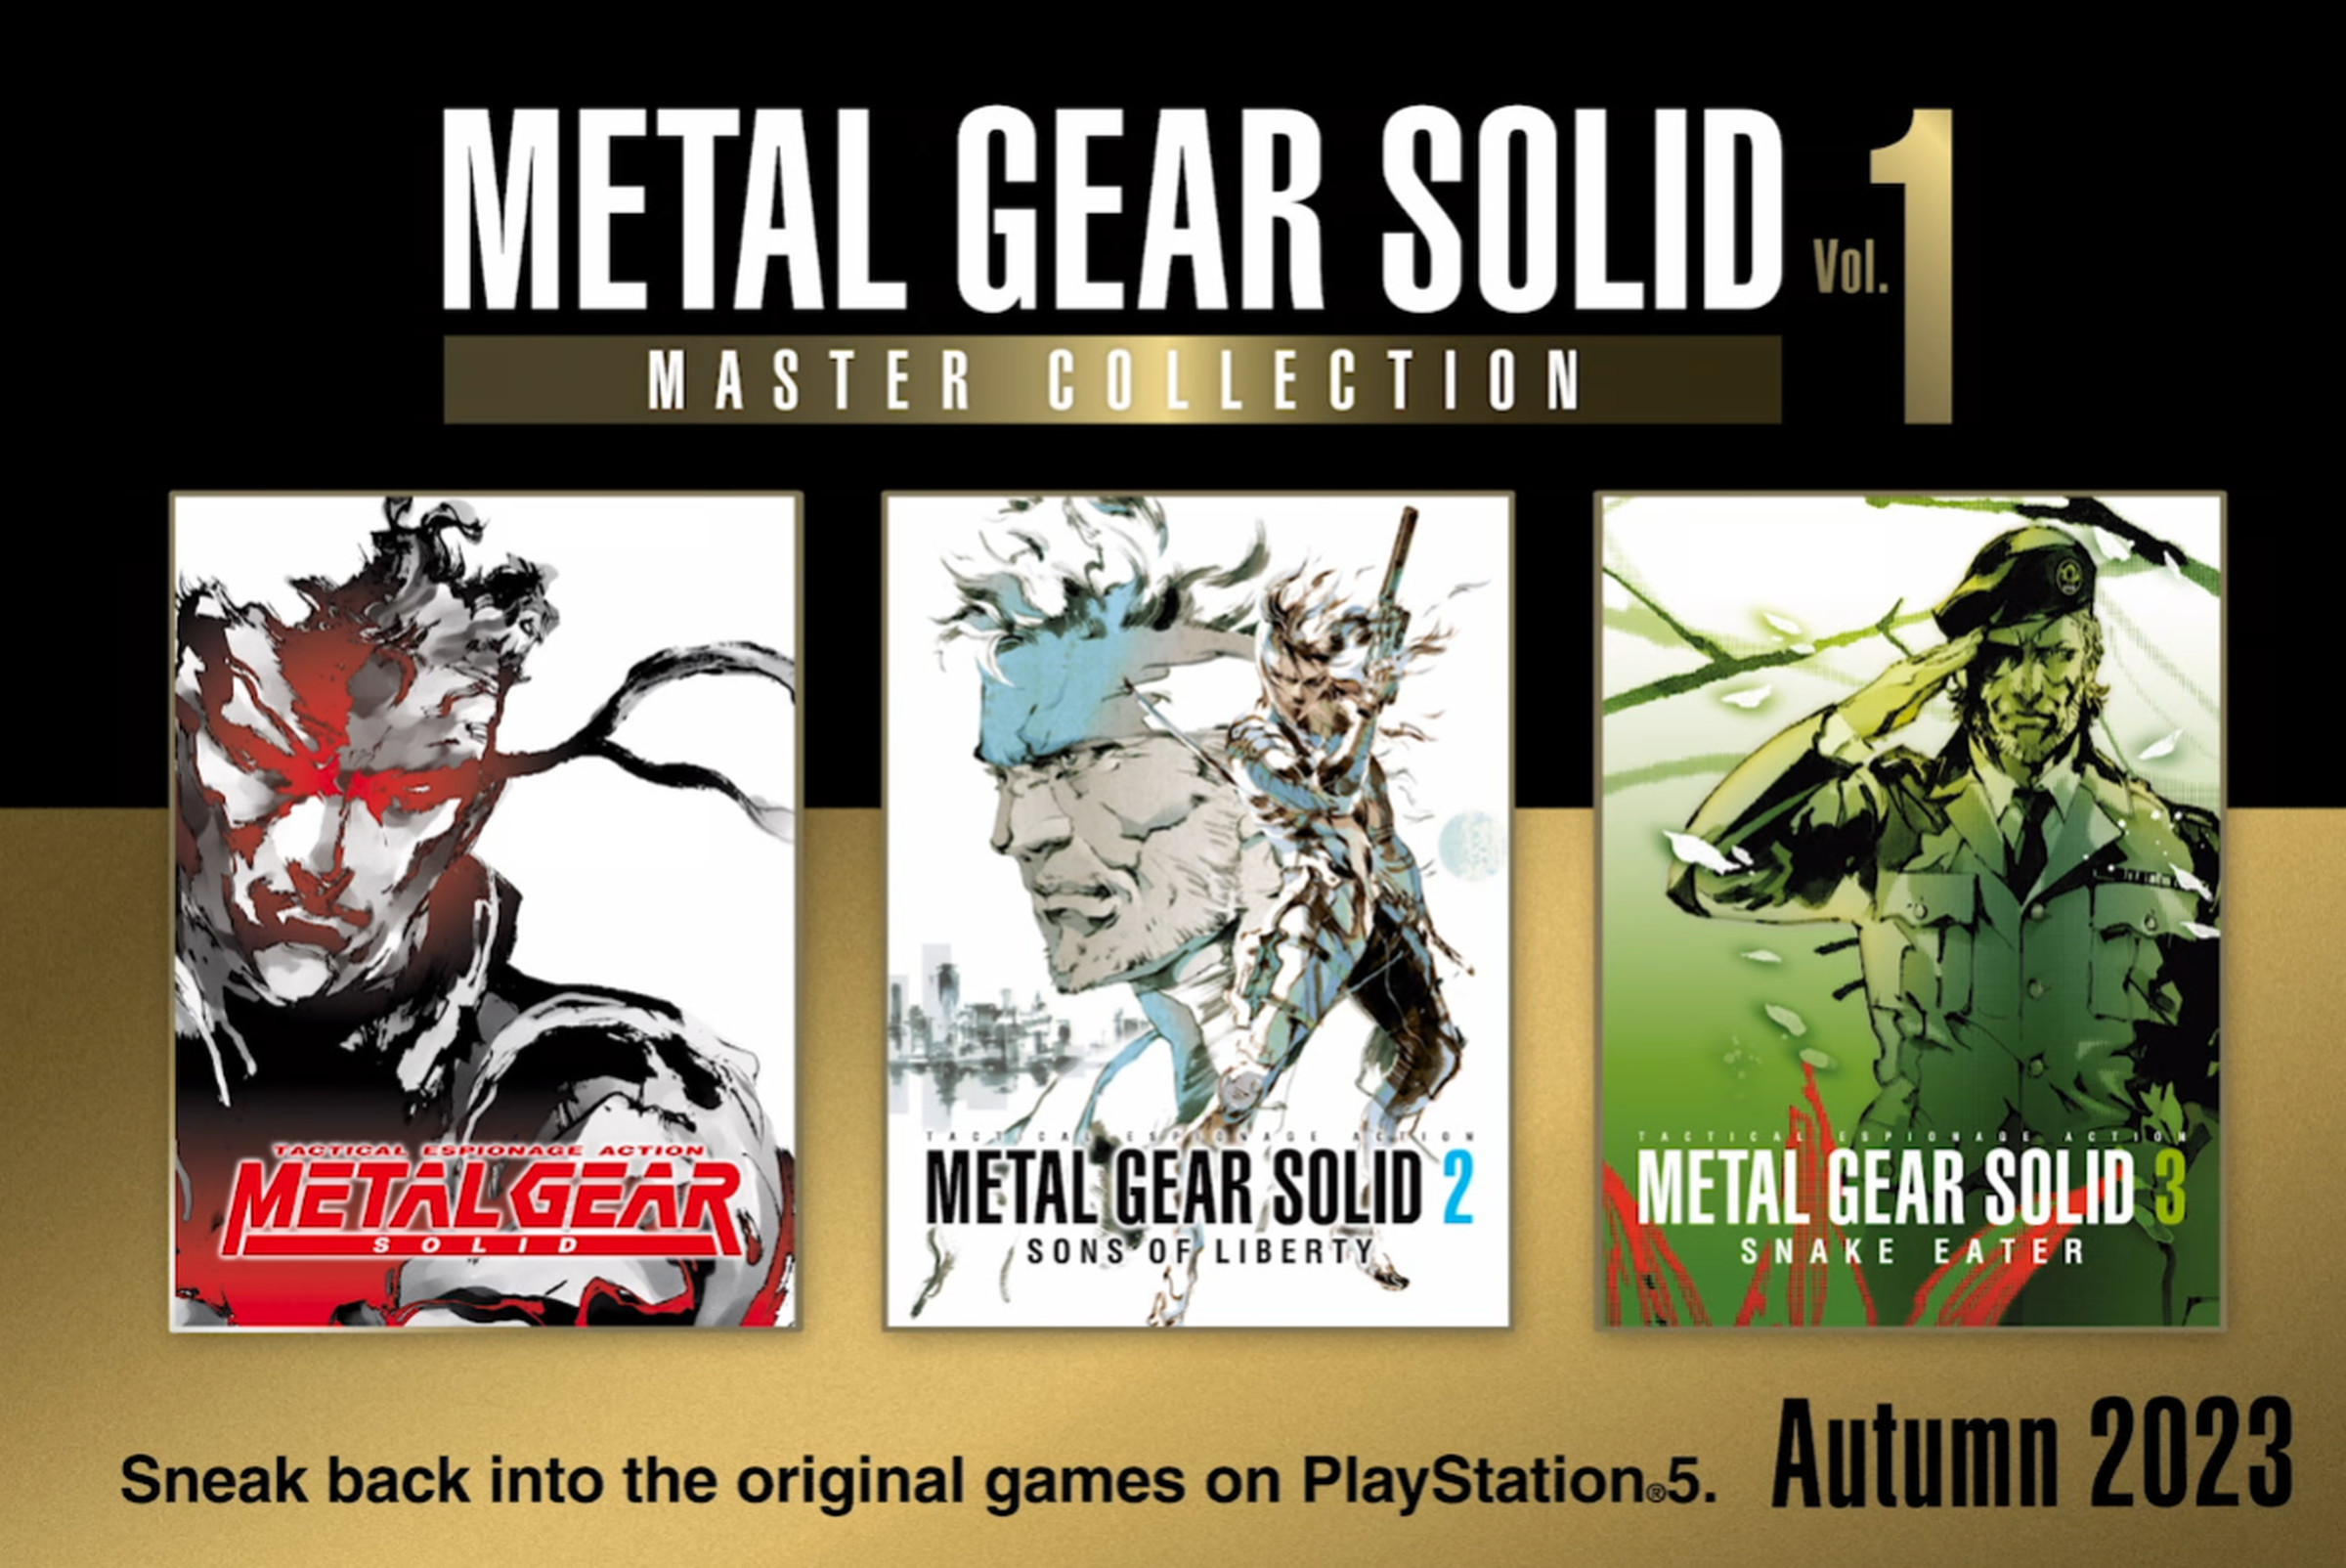 Un'immagine promozionale per la nuova collezione di Metal Gear Solid.